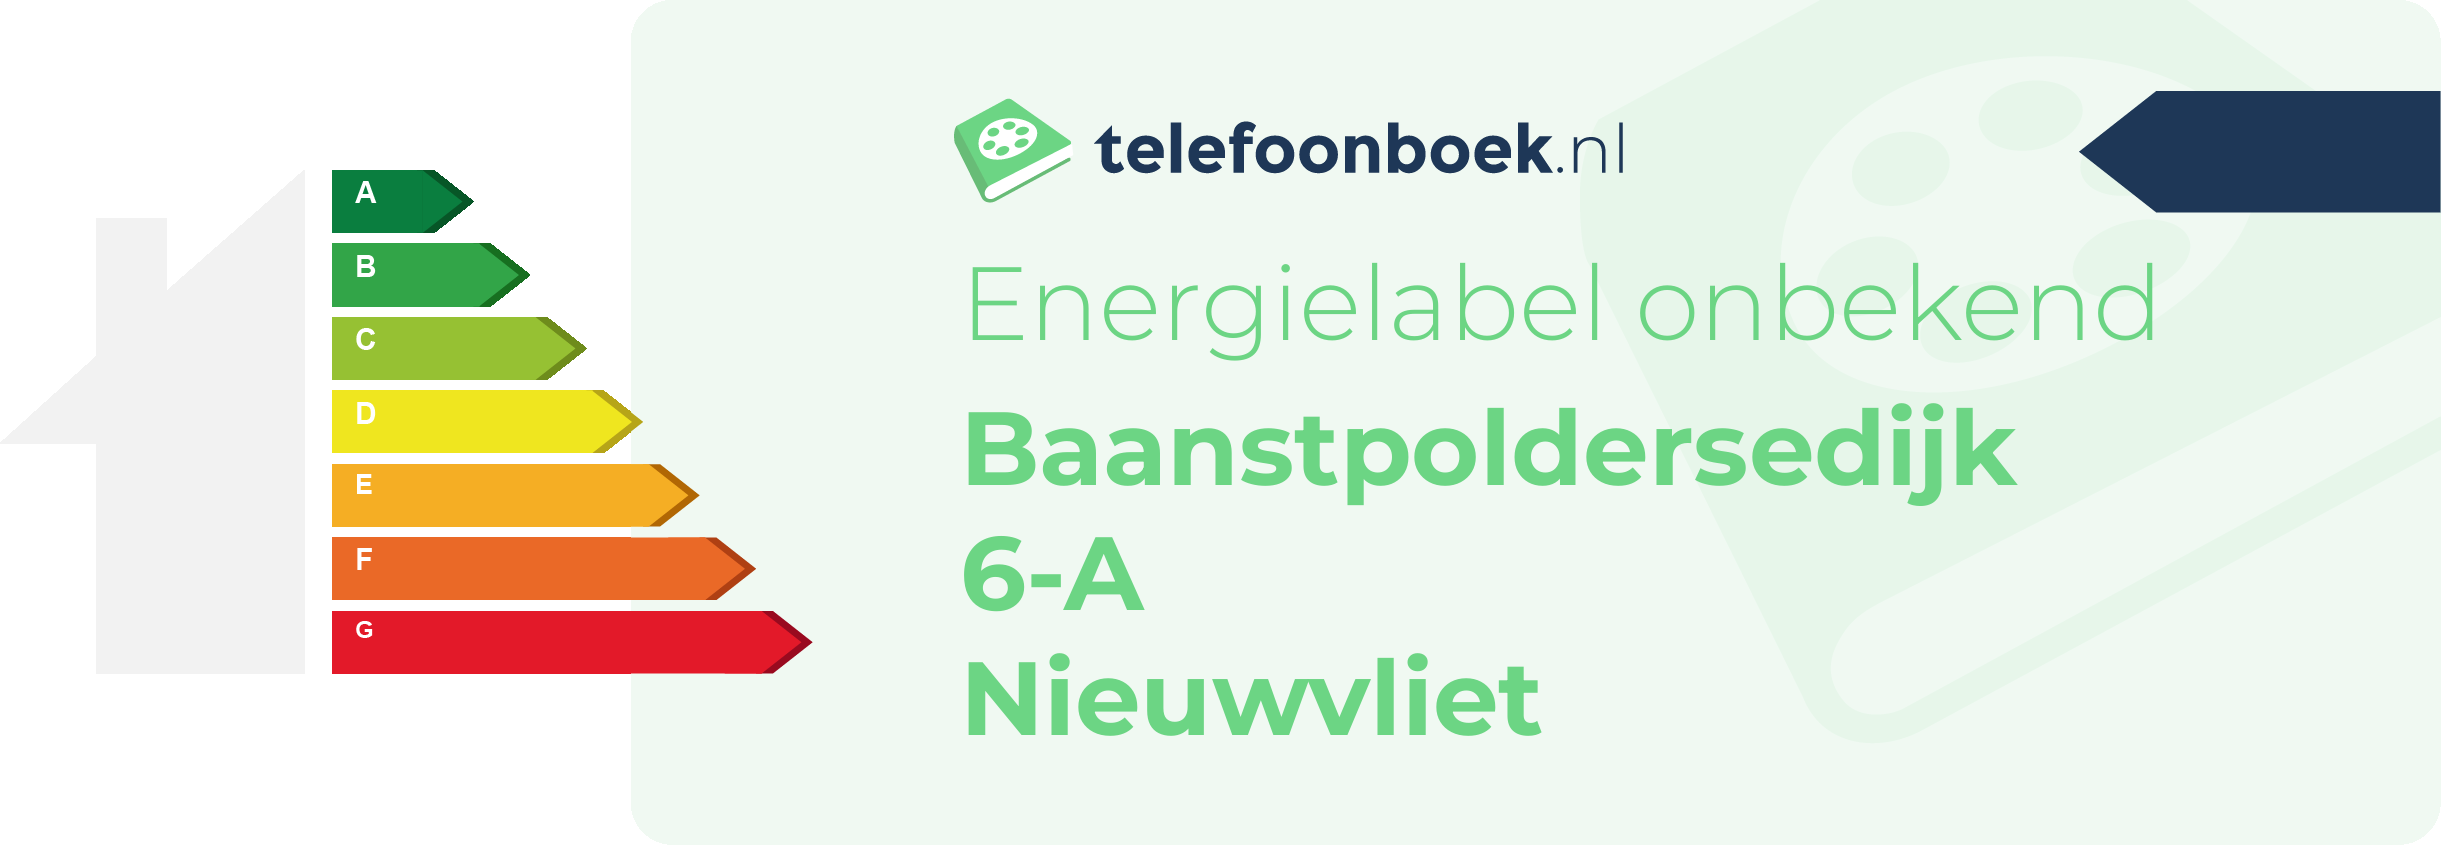 Energielabel Baanstpoldersedijk 6-A Nieuwvliet